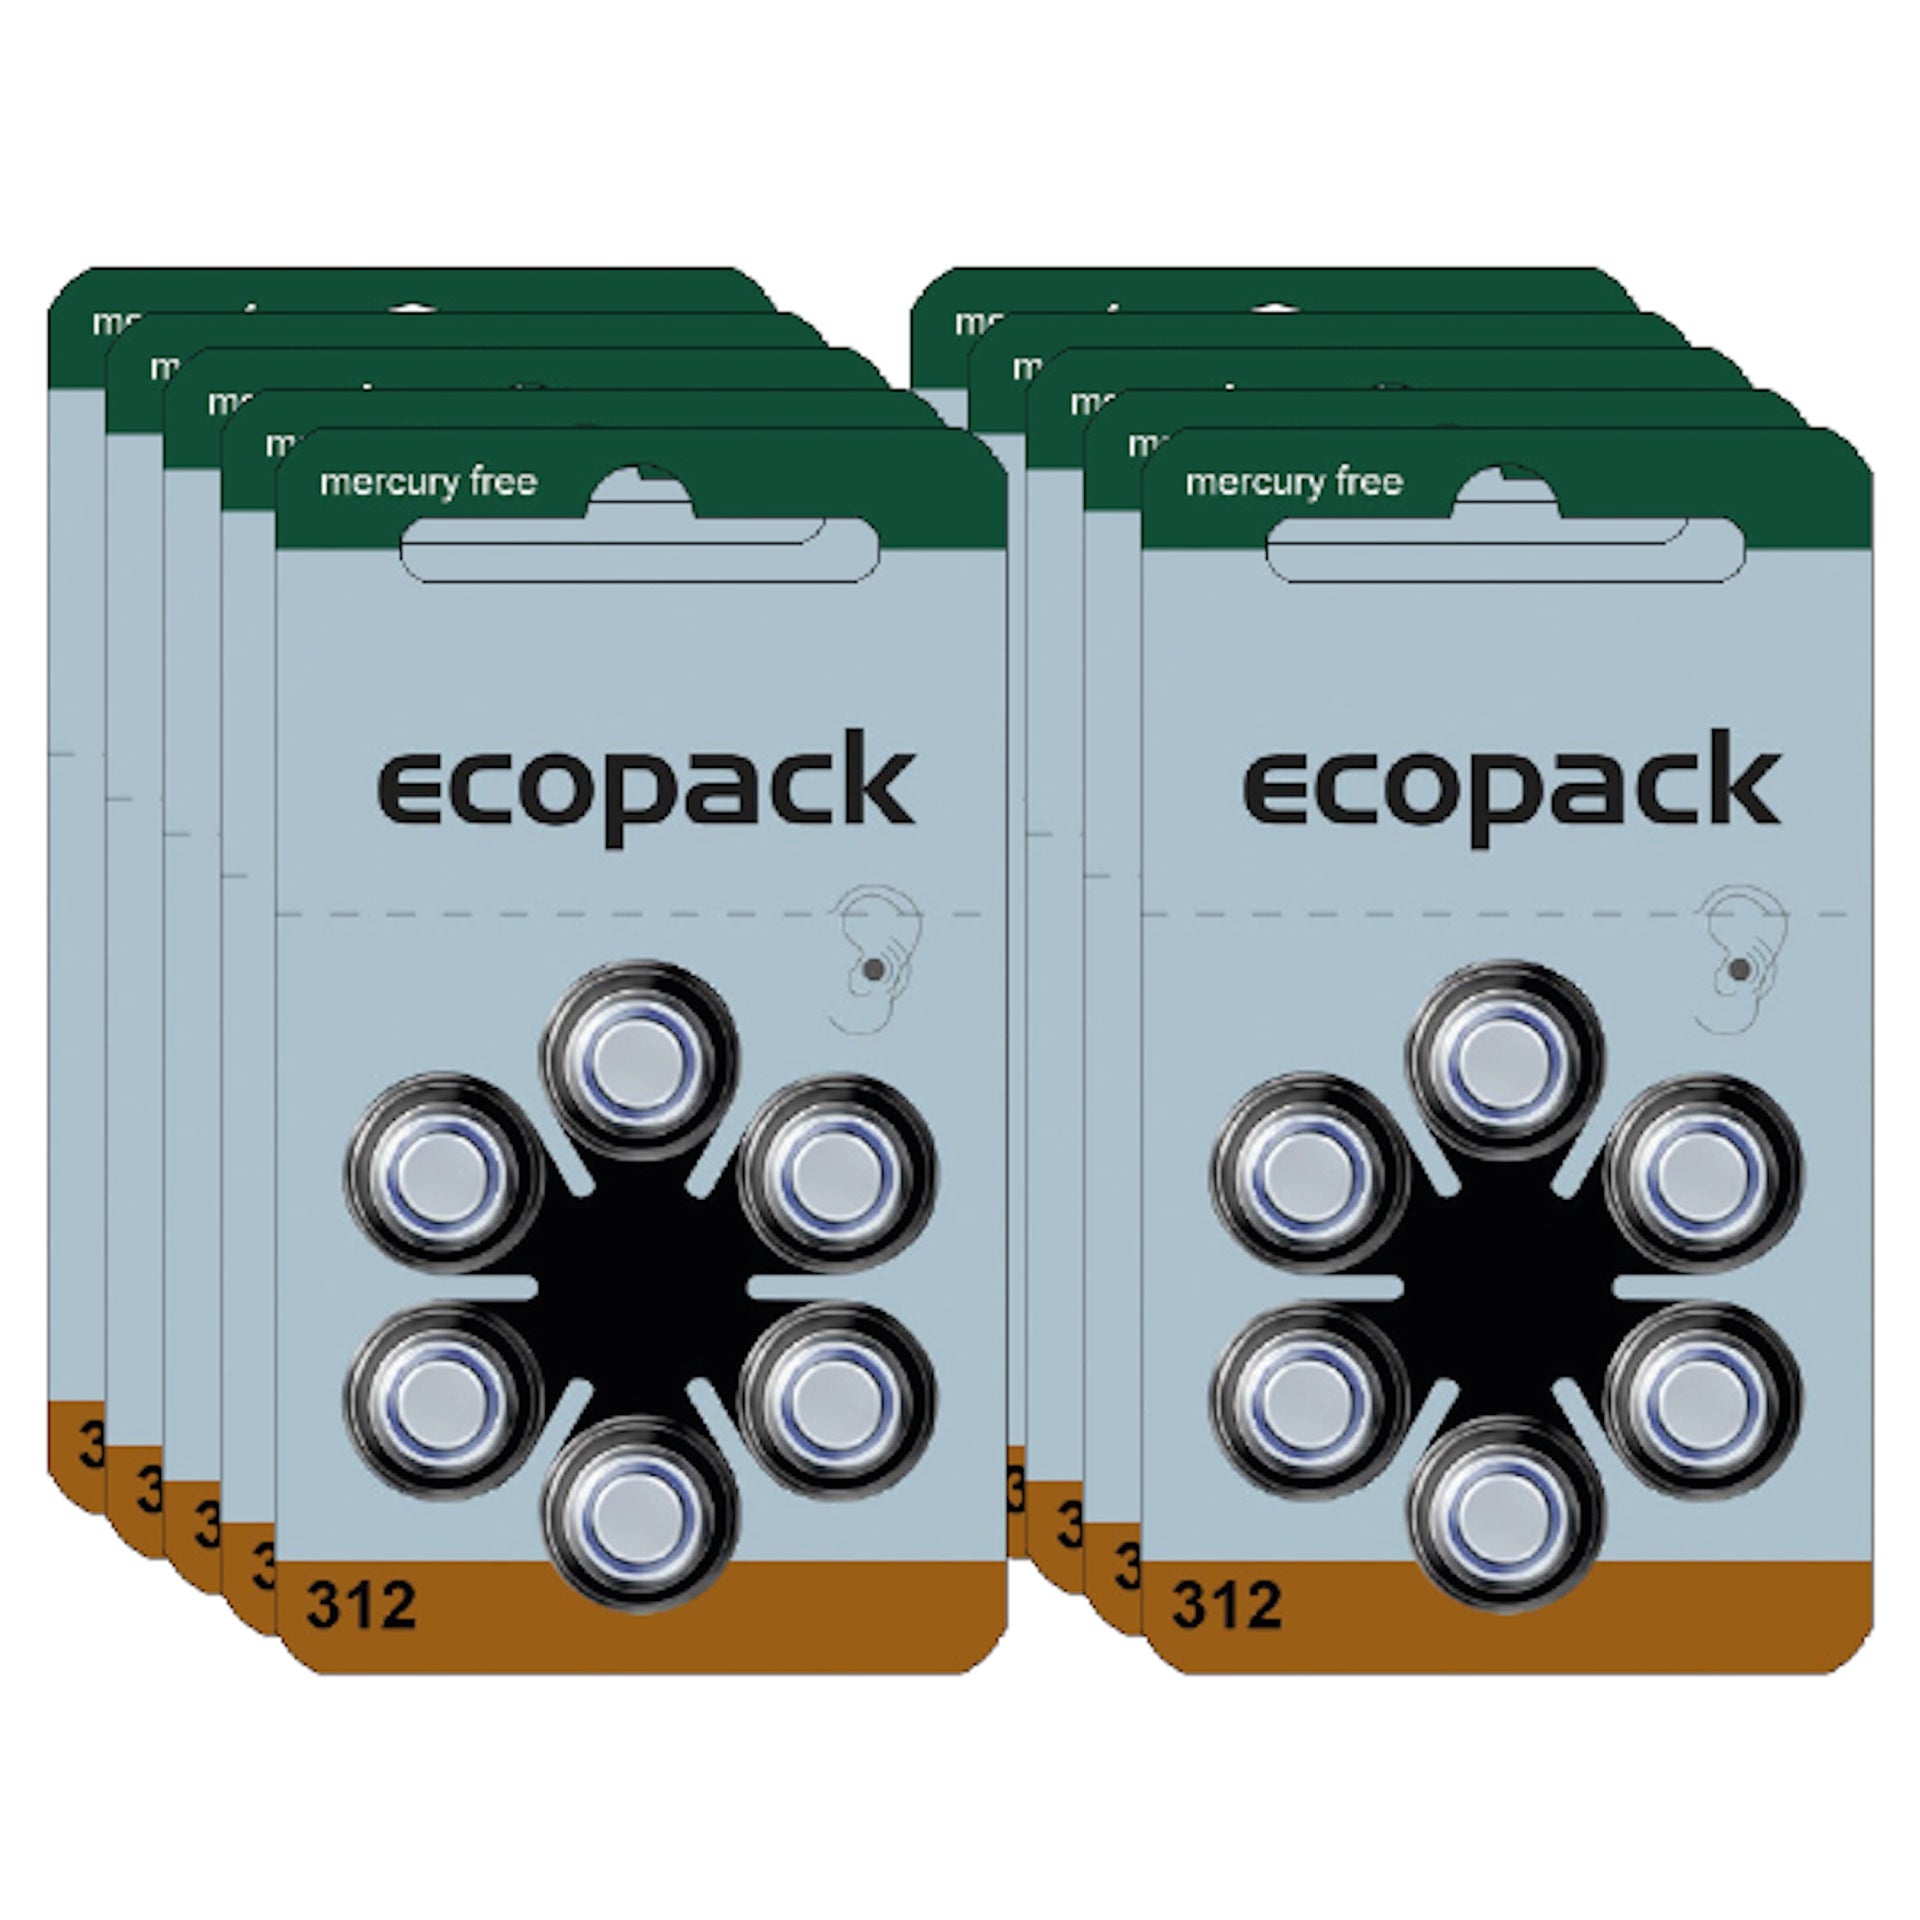 Varta Ecopack 312 Hörgerätebatterien (60er Pack) sind leistungsstarke Zink-Luft-Batterien